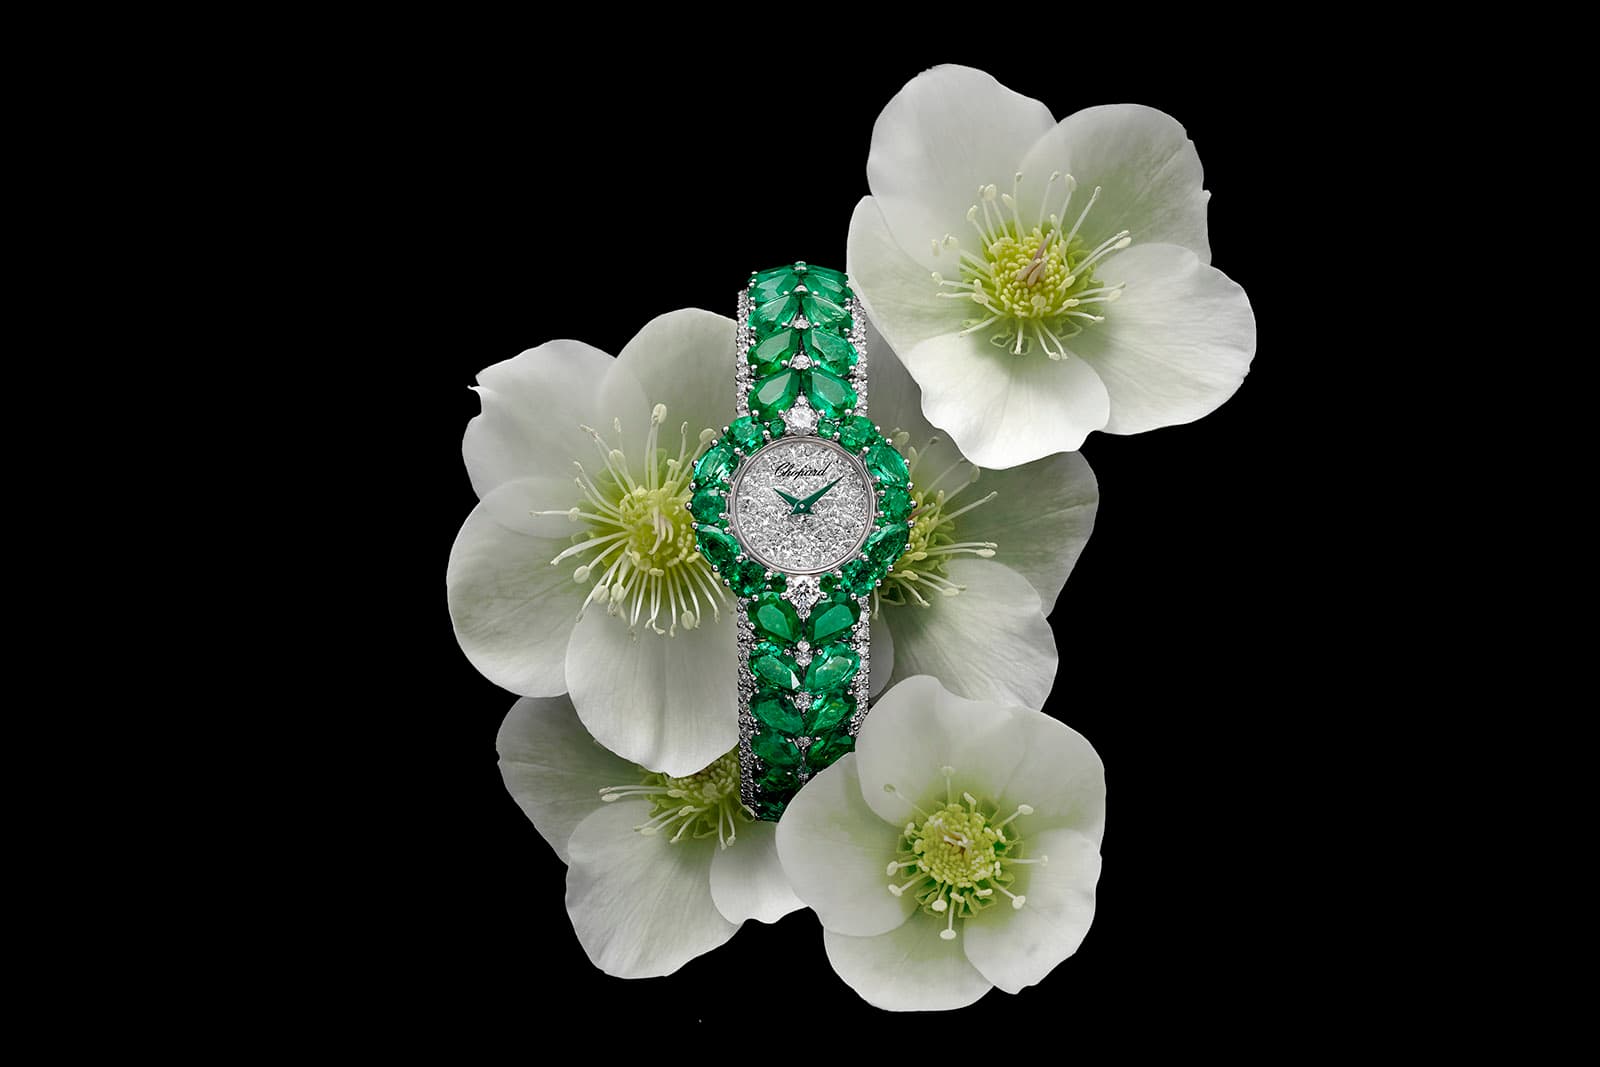 Ювелирные часы Chopard Esperanza из коллекции Red Carpet Collection 2021 года – идеальный пример паве из бриллиантов в разных огранках